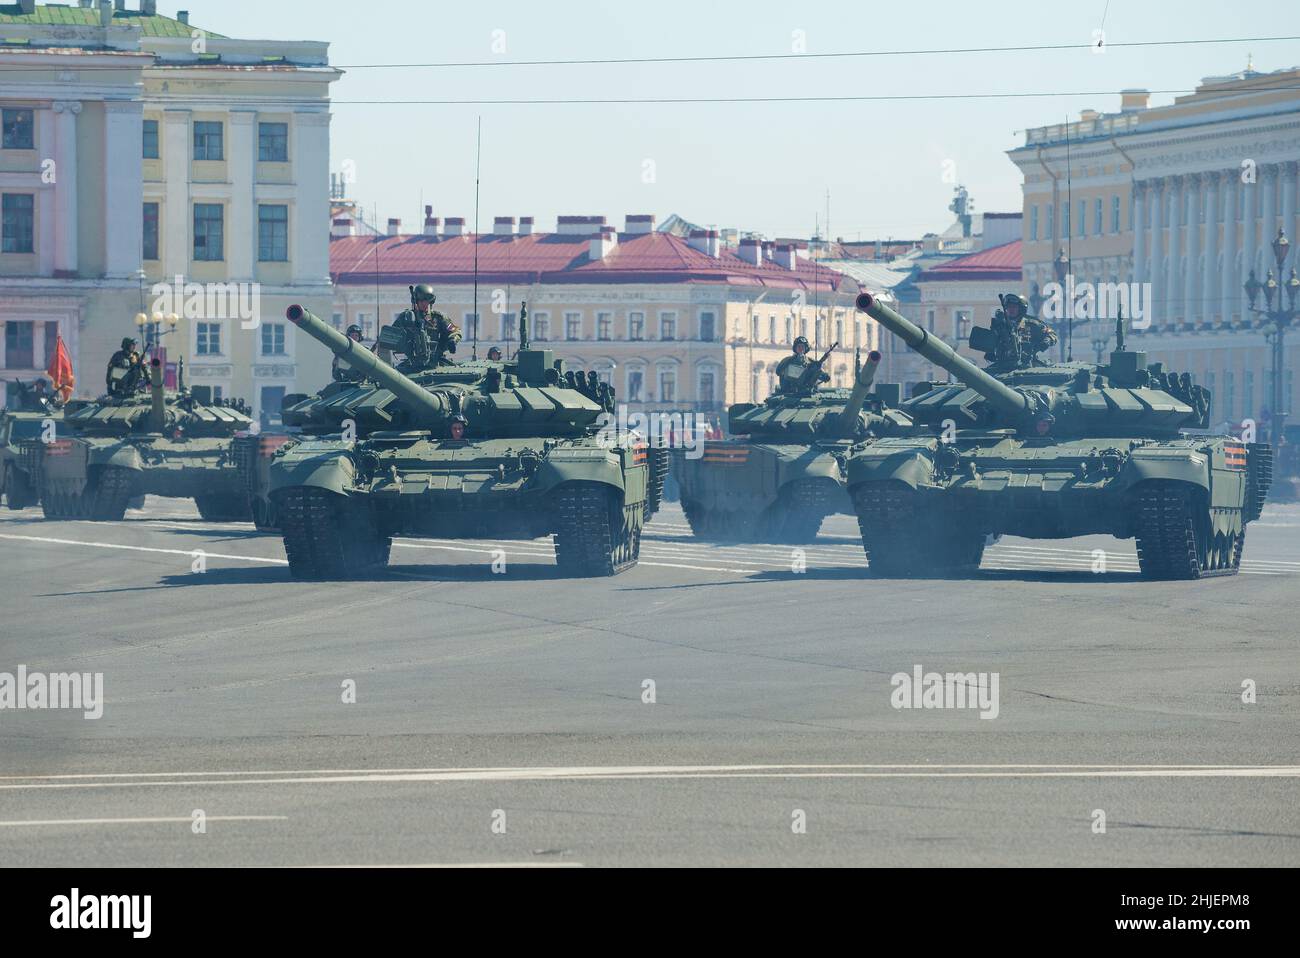 ST. PETERSBOURG, RUSSIE - 24 29 JUIN 2020 : chars russes du T-72B3 sur la place du Palais. Fragment du défilé militaire Banque D'Images